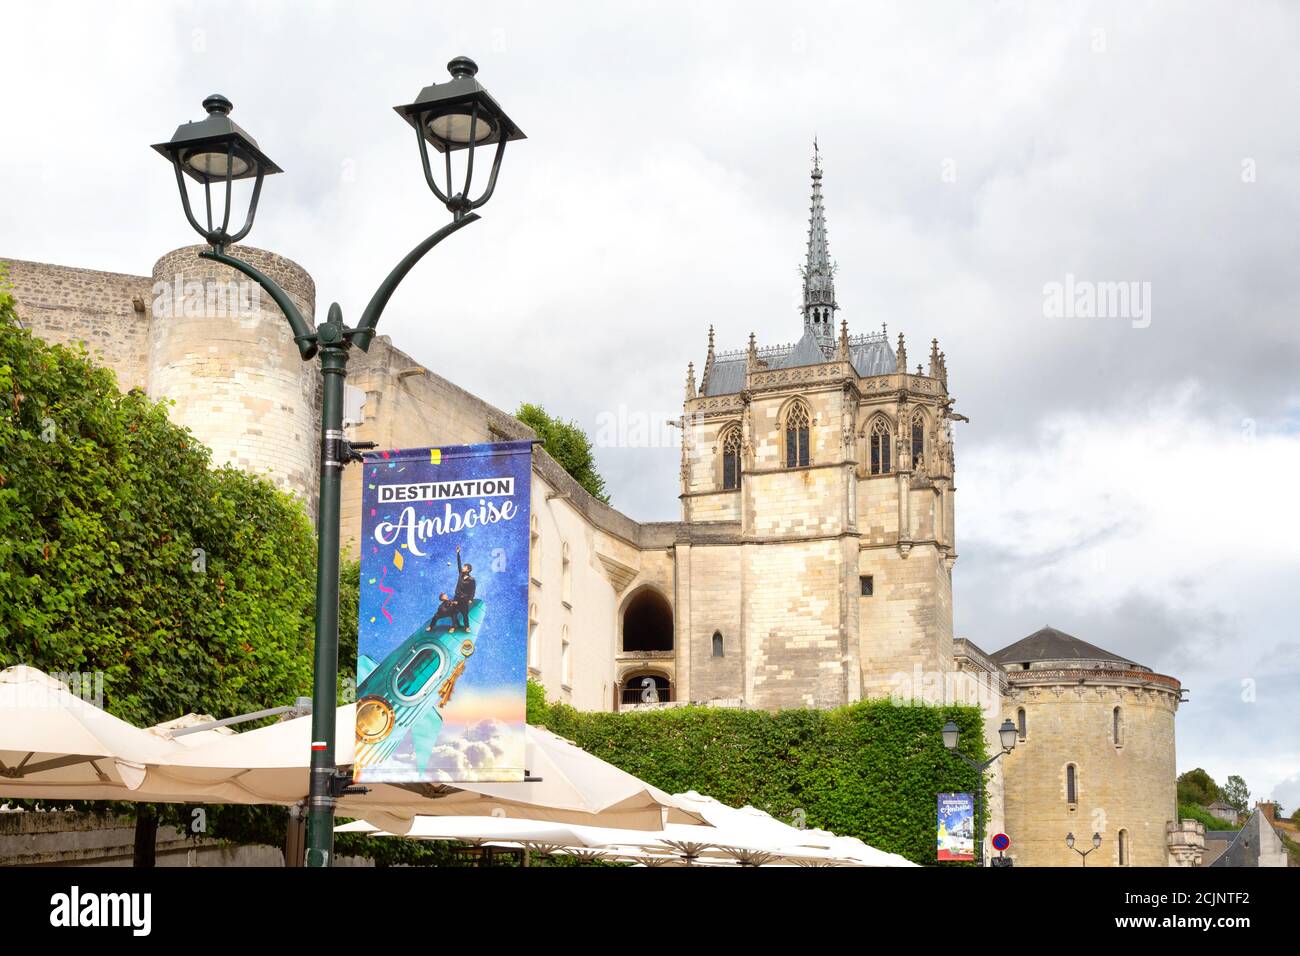 Voyage en France - une affiche de voyage, la chapelle Saint-Hubert et le château médiéval d'Amboise, Amboise, Vallée de la Loire, France Europe Banque D'Images